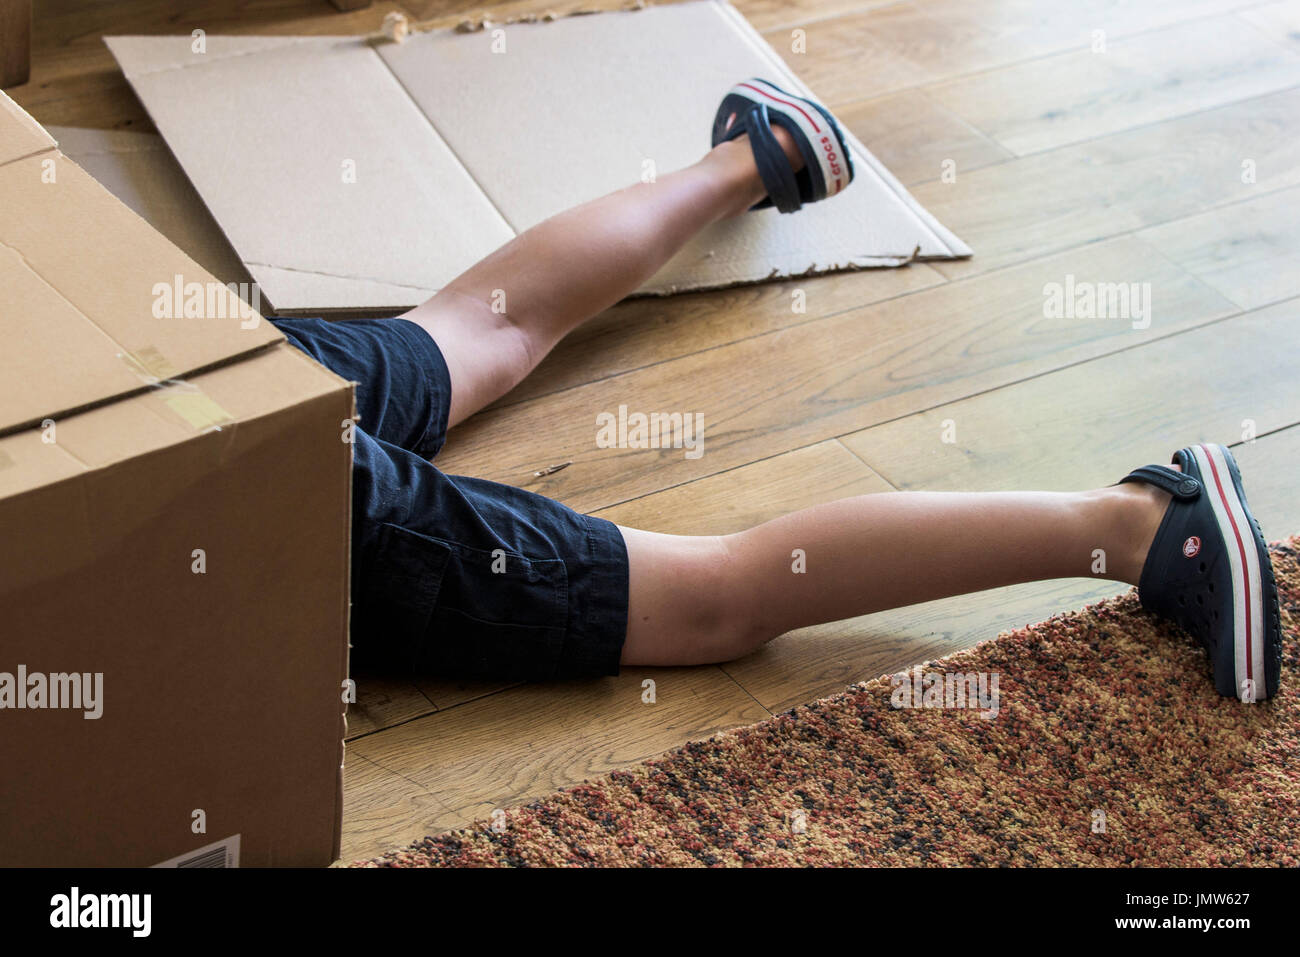 Les jambes d'un jeune garçon qui sort d'une boîte en carton Photo Stock -  Alamy